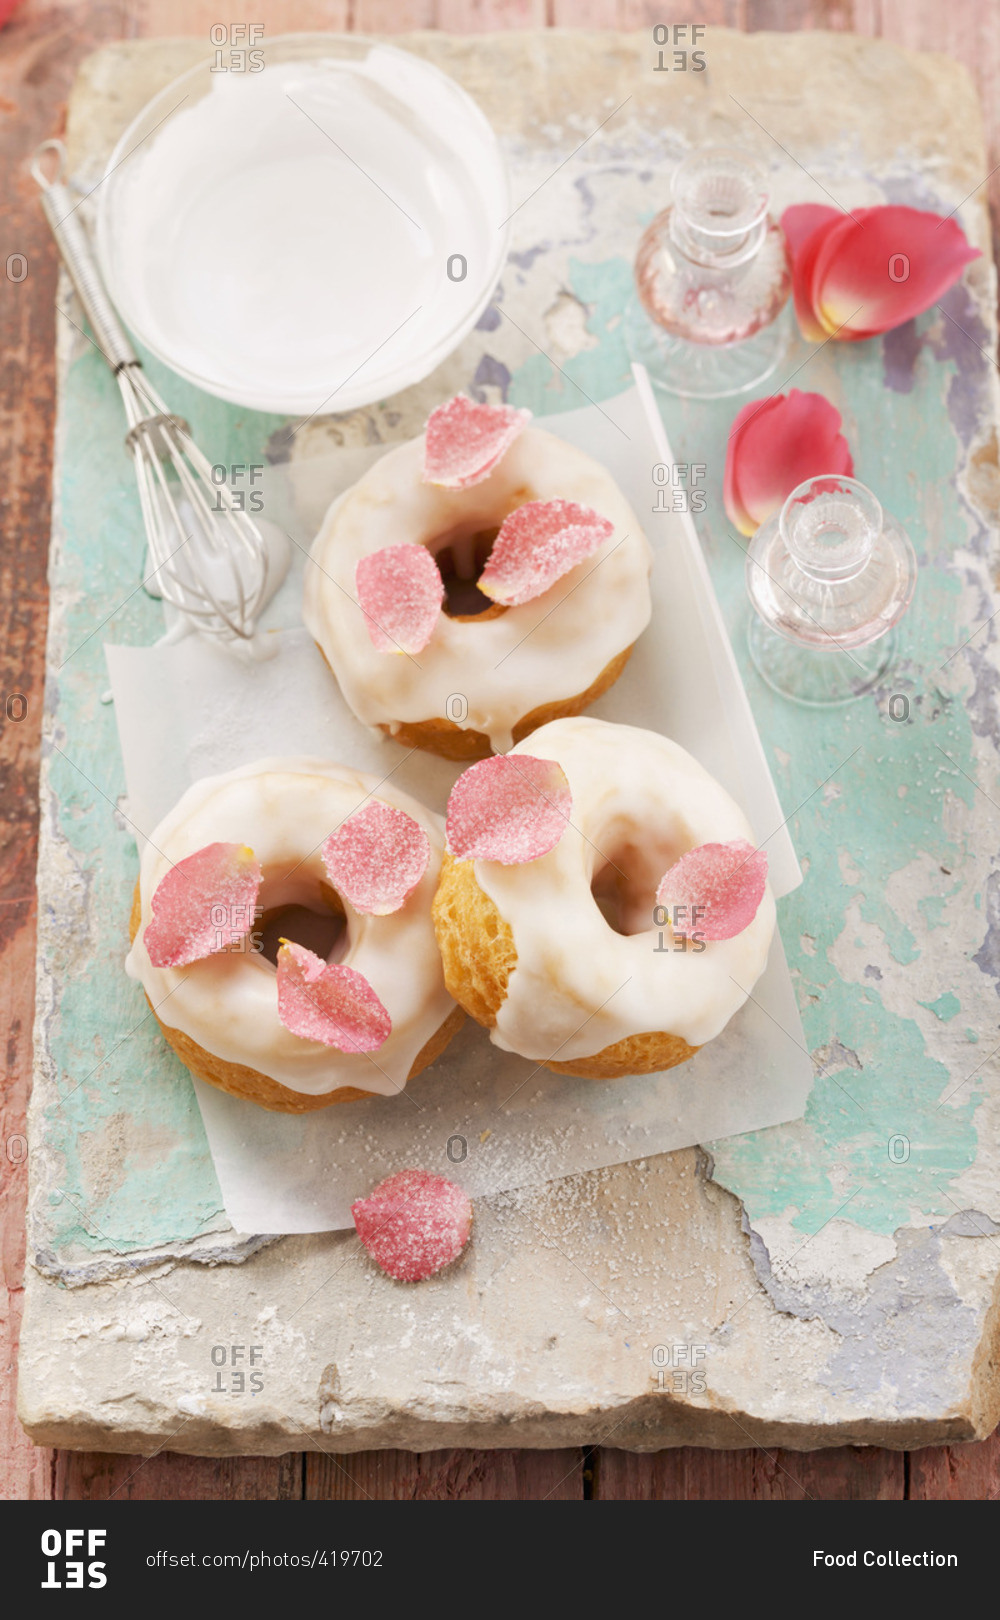 'La vie en rose' doughnuts with candied rose petals